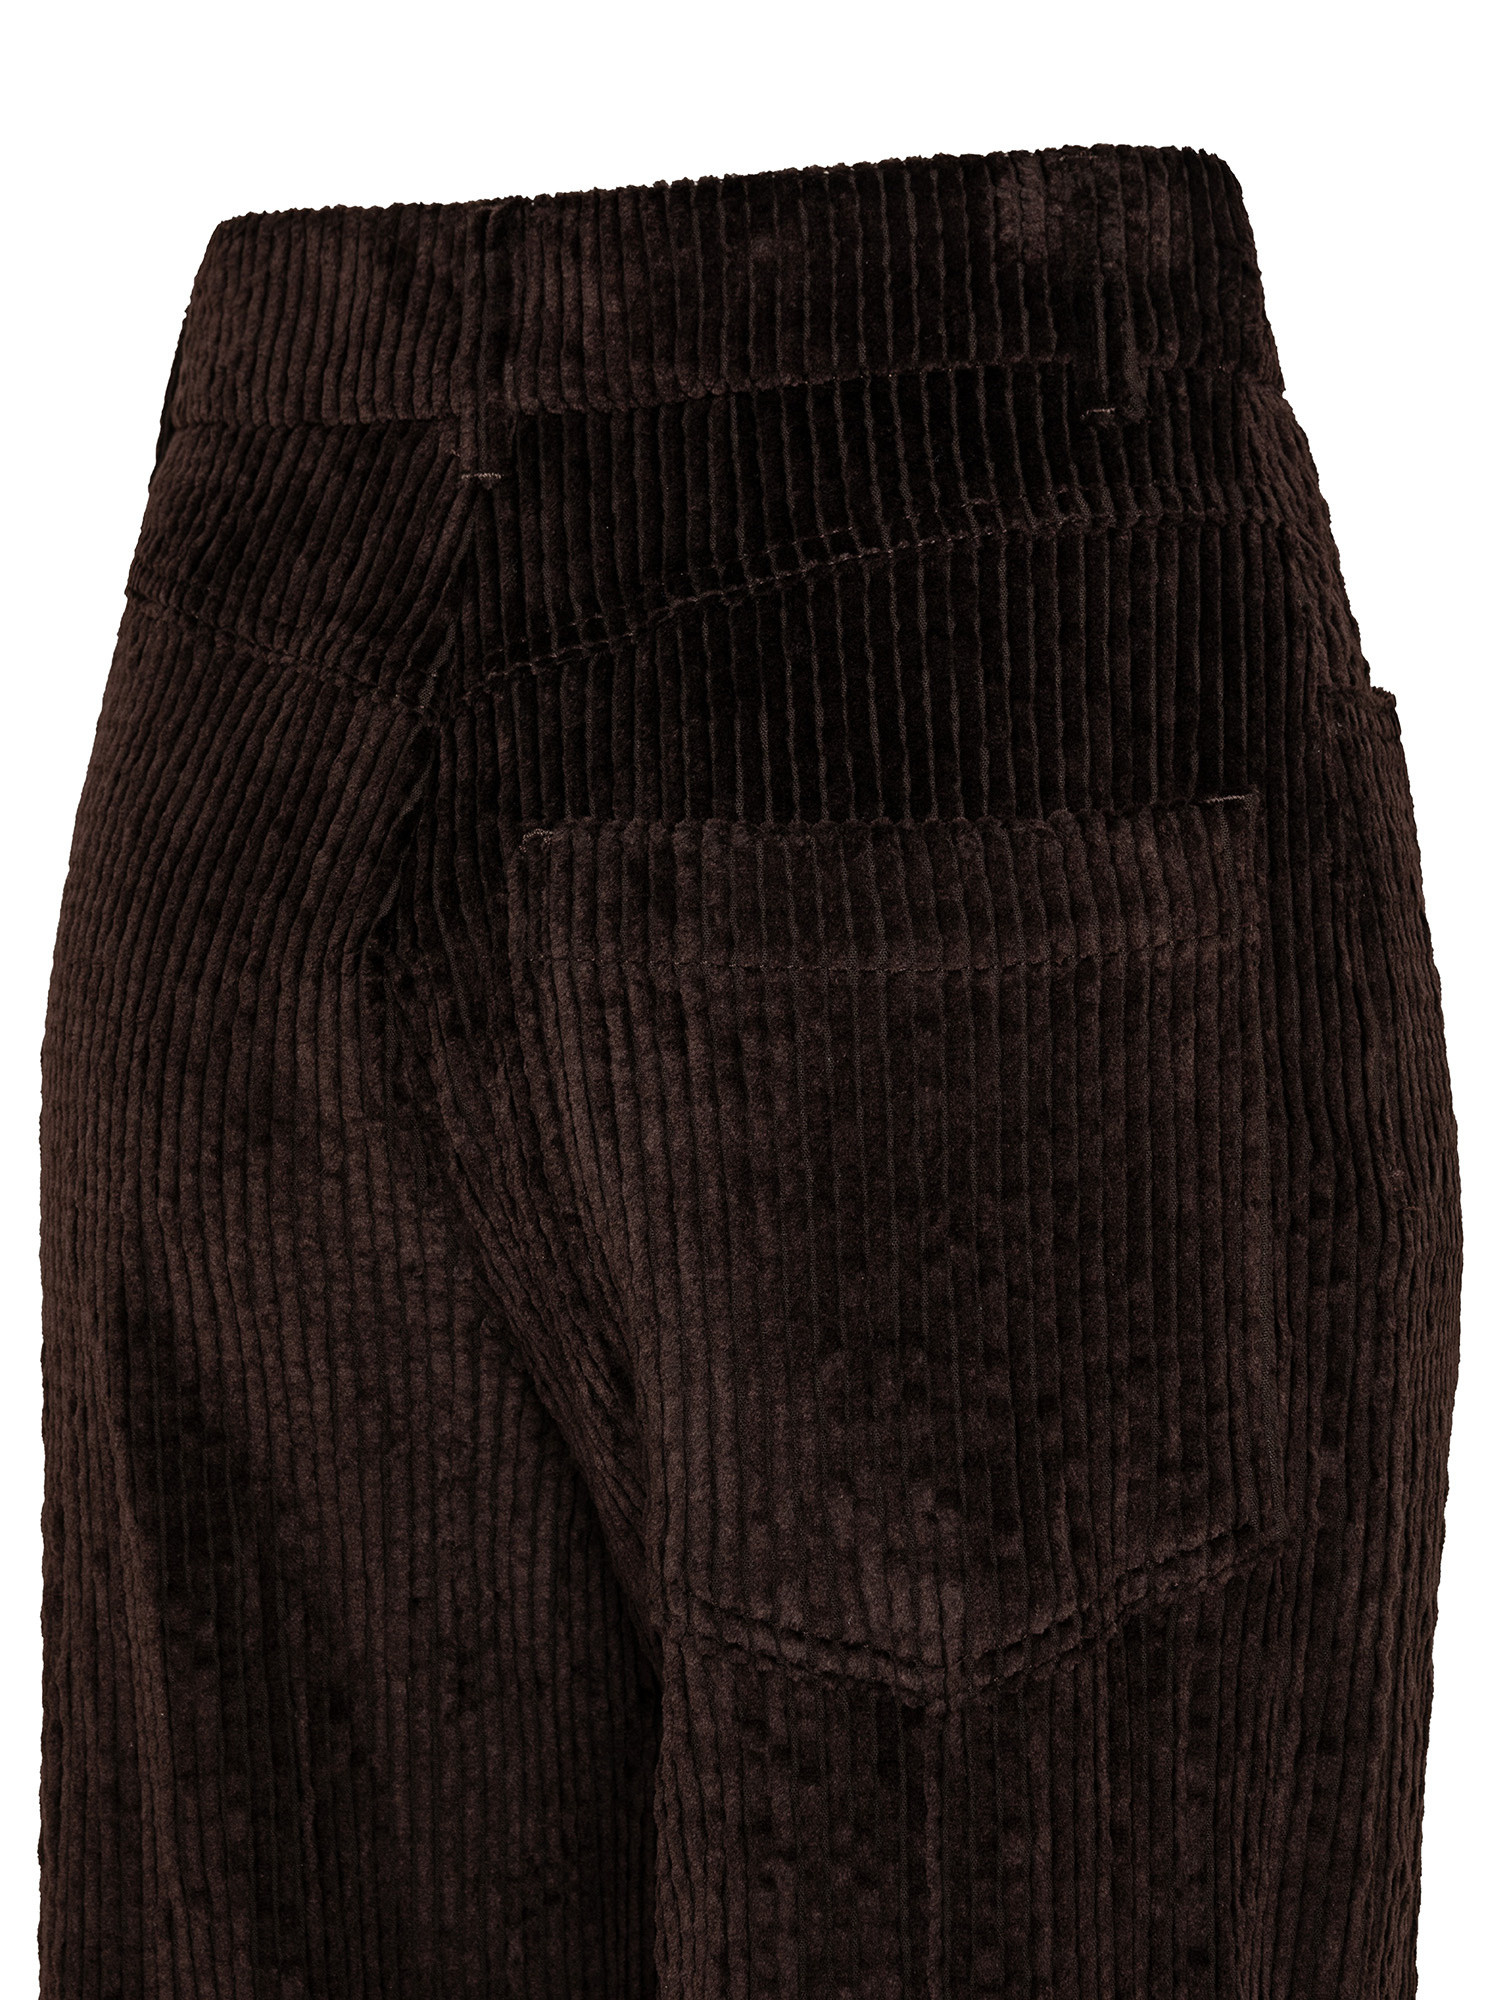 Pantalone a gamba svasata in velluto, Brown, large image number 2